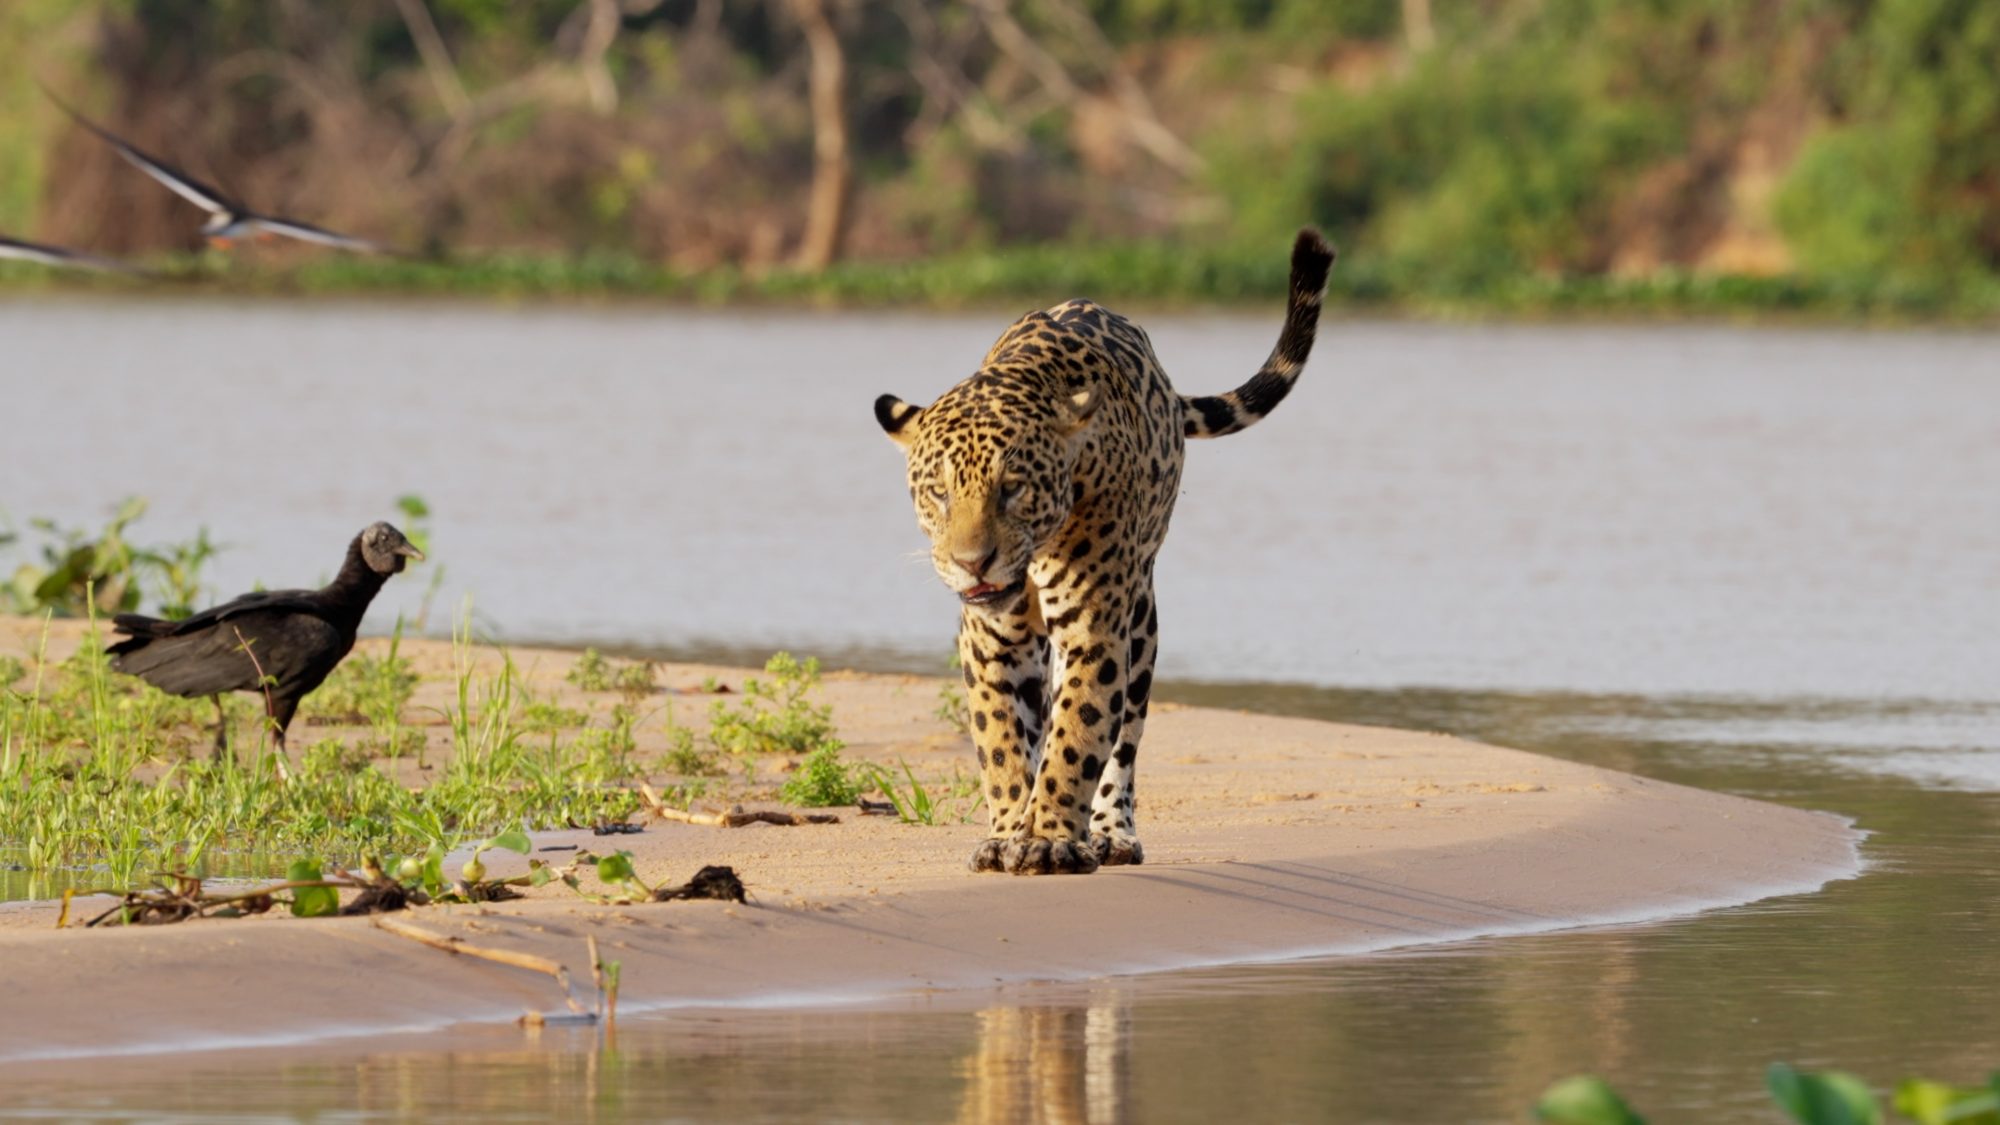 Male Jaguar by the river – Pantanal, Brazil 2022